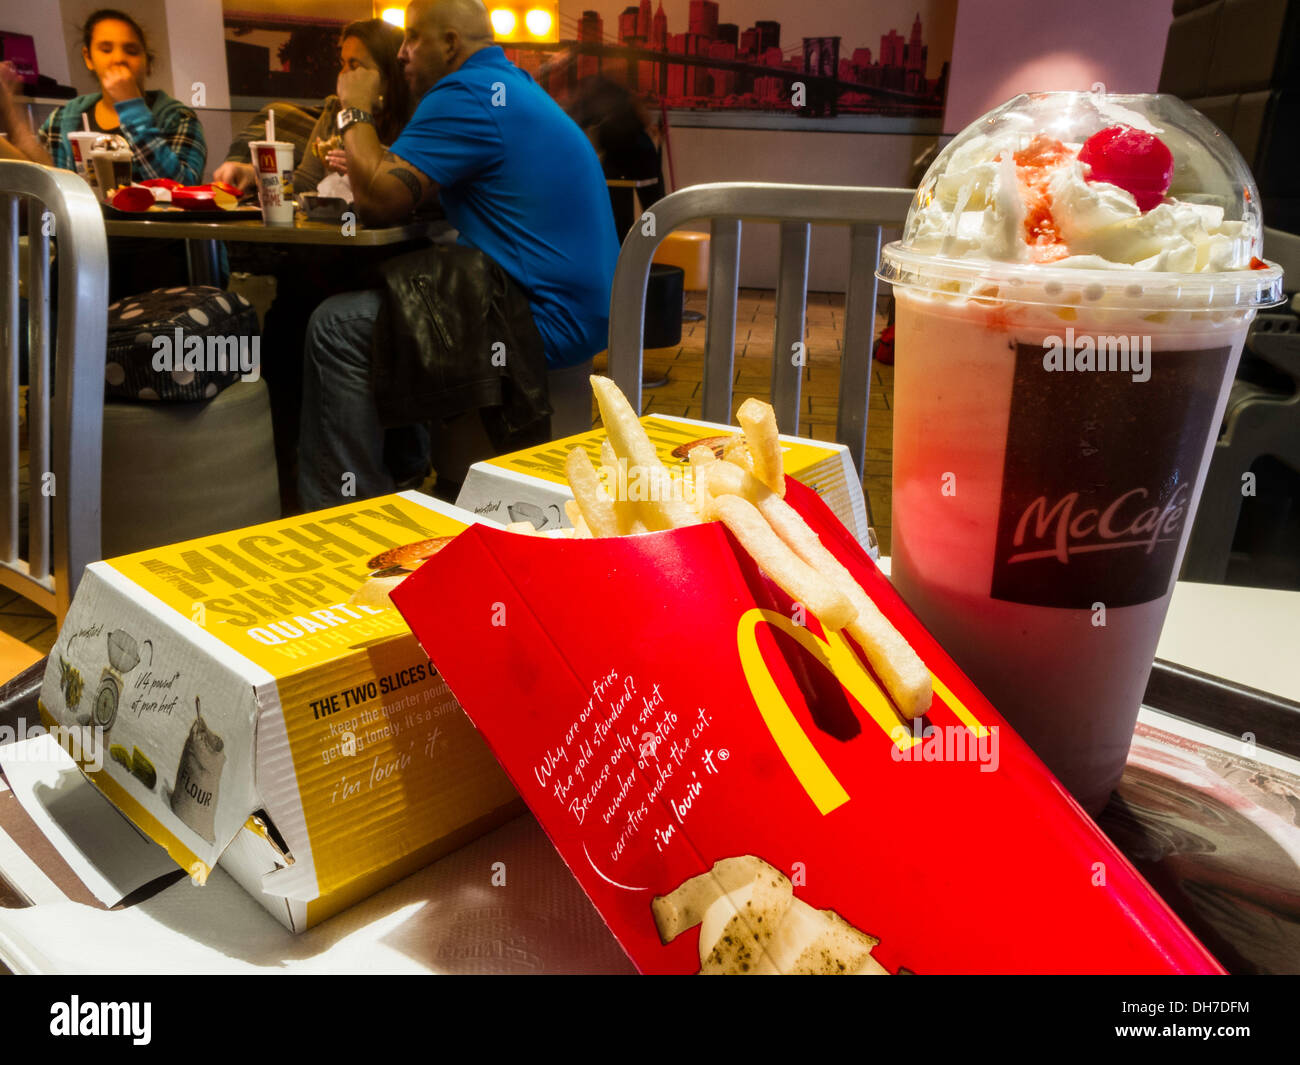 McDonald's ristorante interno, Cheesebuger, patatine fritte e pasto frullato, NYC, STATI UNITI D'AMERICA Foto Stock